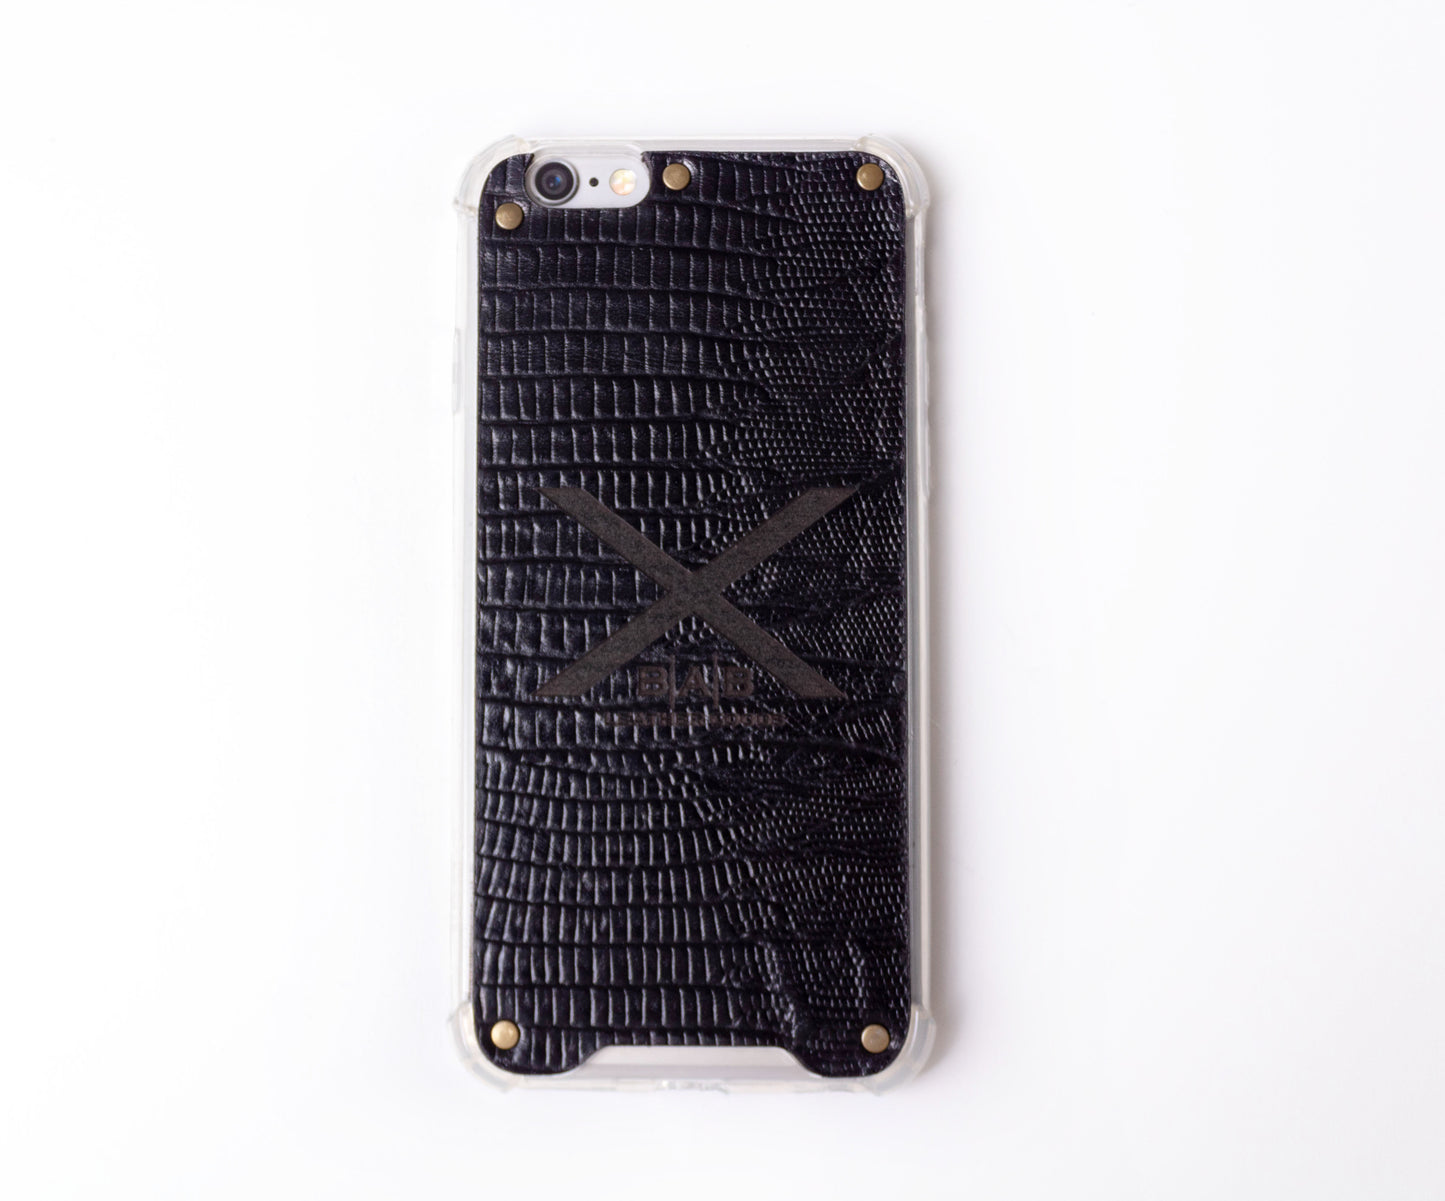 Funda para iPhone de Cuero Genuino Lagarto Negro Texturizado cortado y grabado con  láser, 5 Remaches de Bronce.- F36